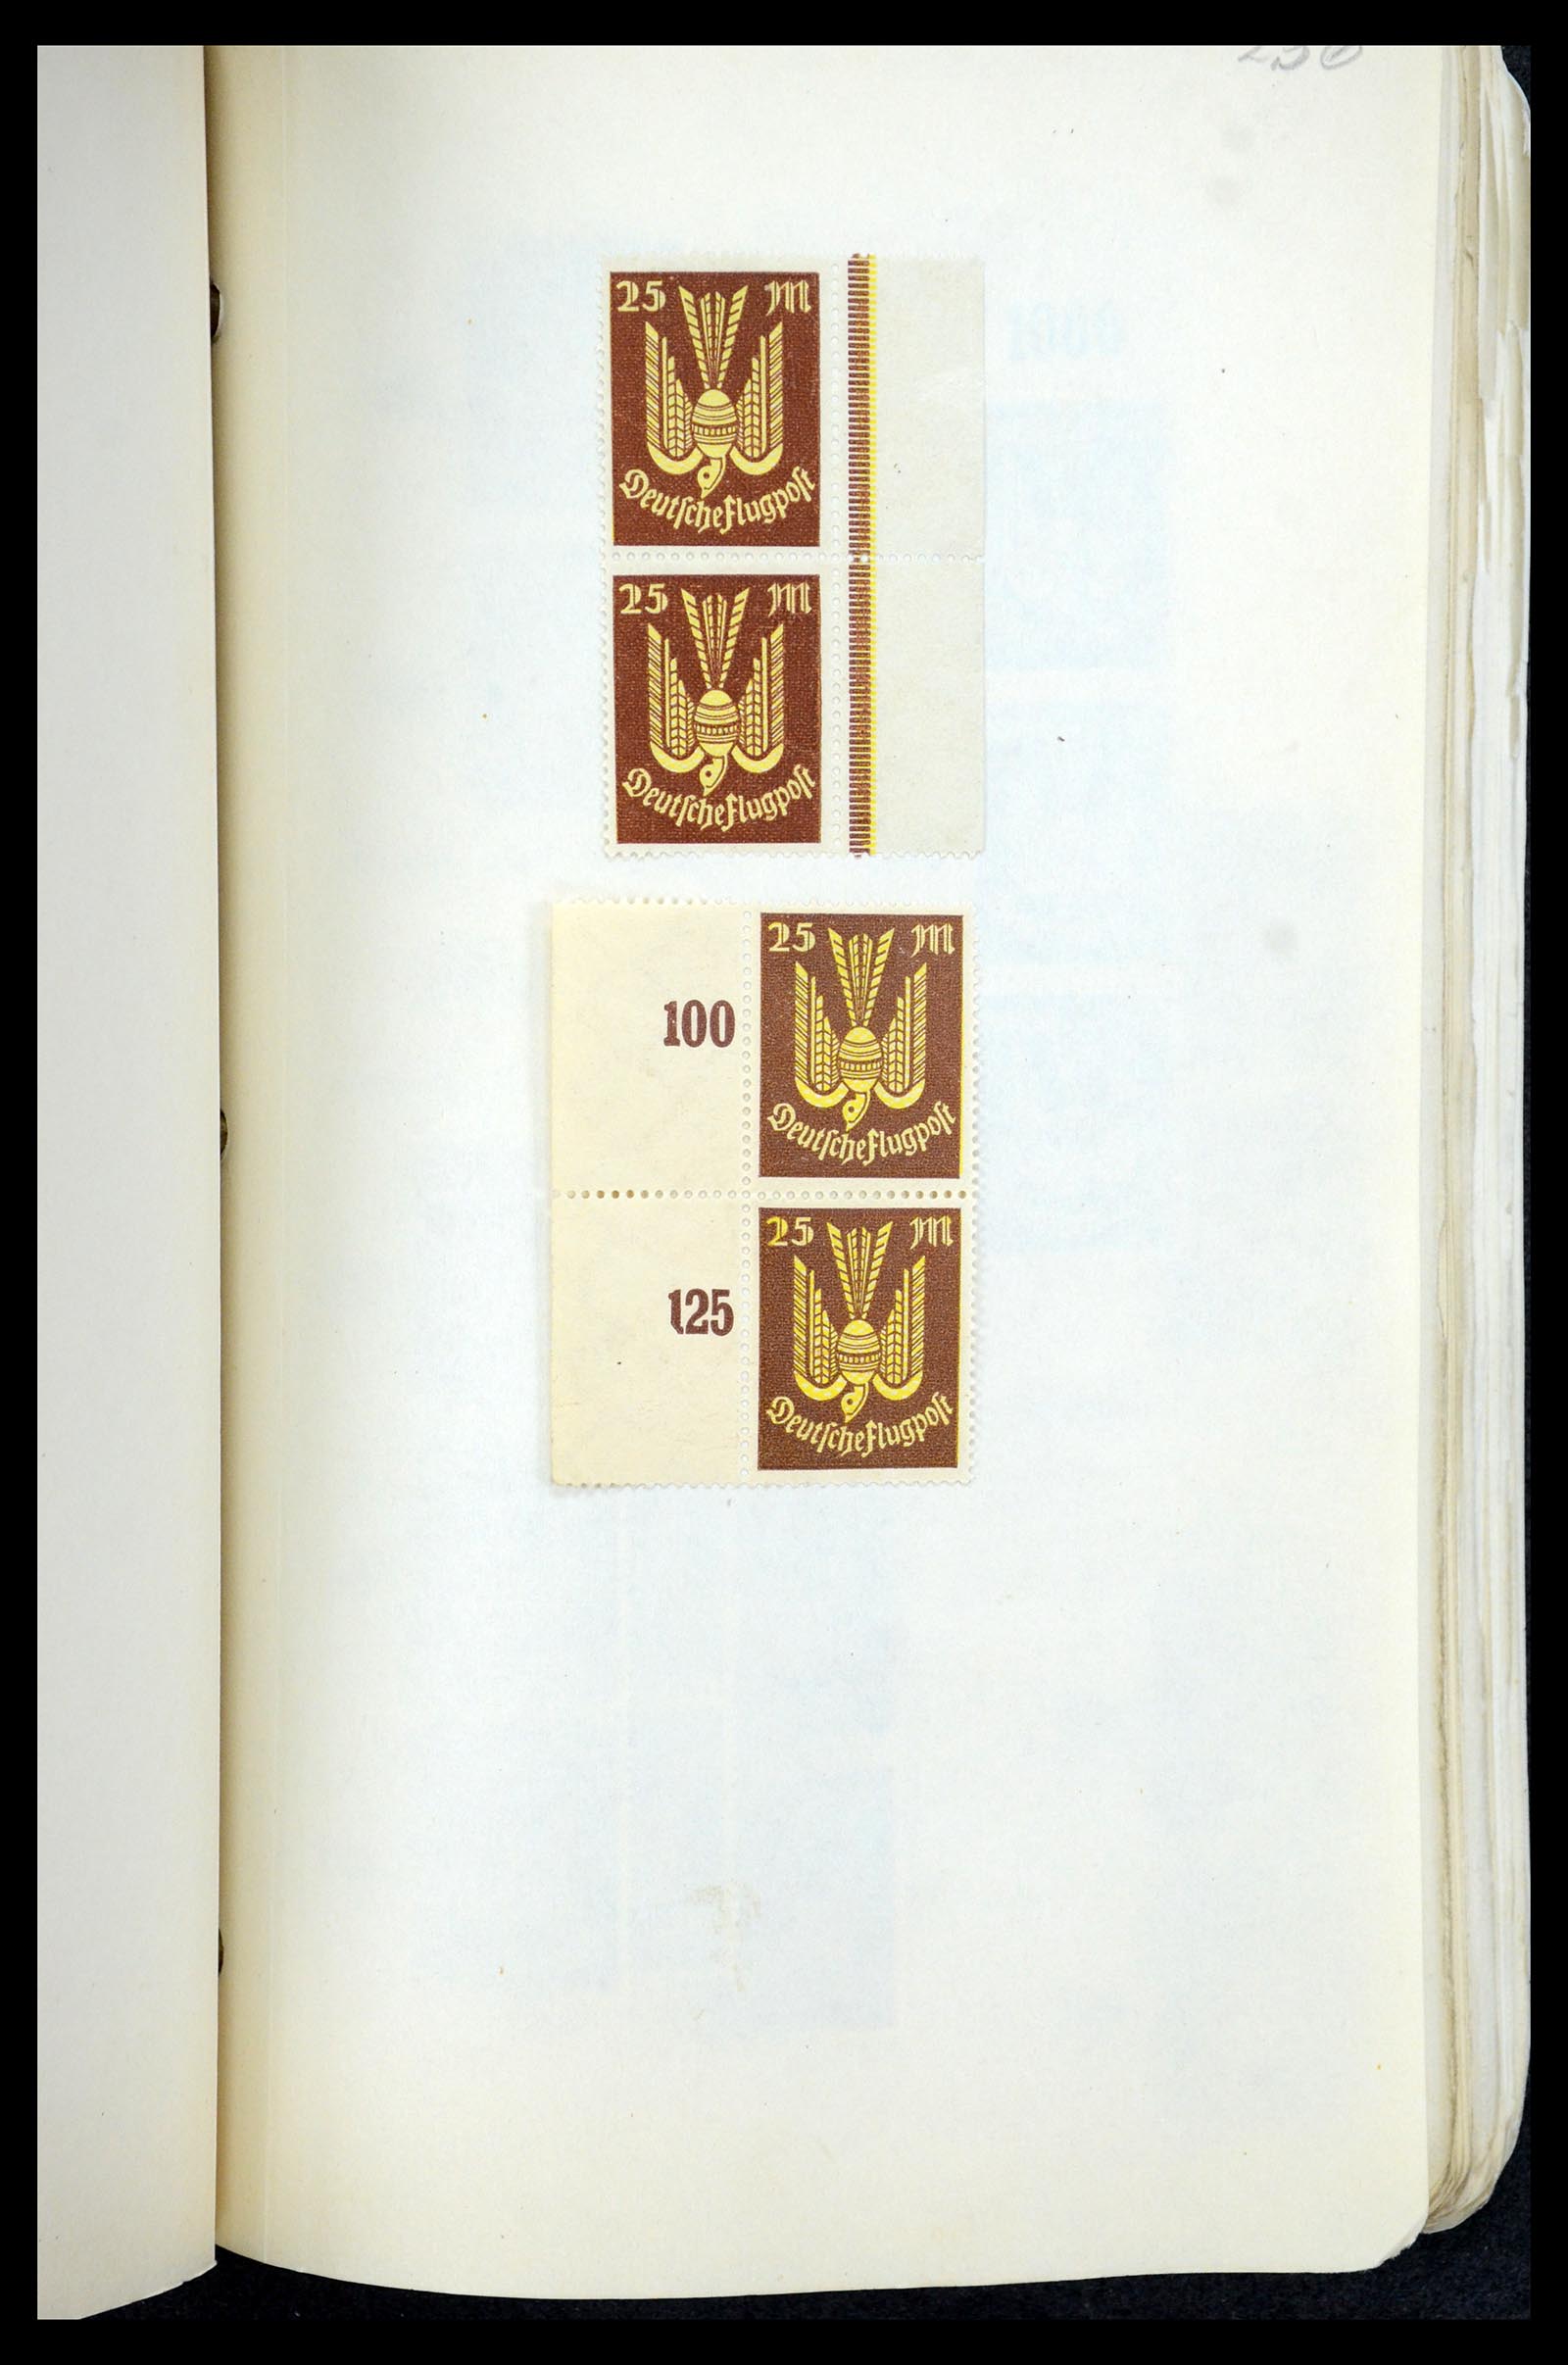 35565 712 - Postzegelverzameling 35565 Duitse Rijk infla 1919-1923.